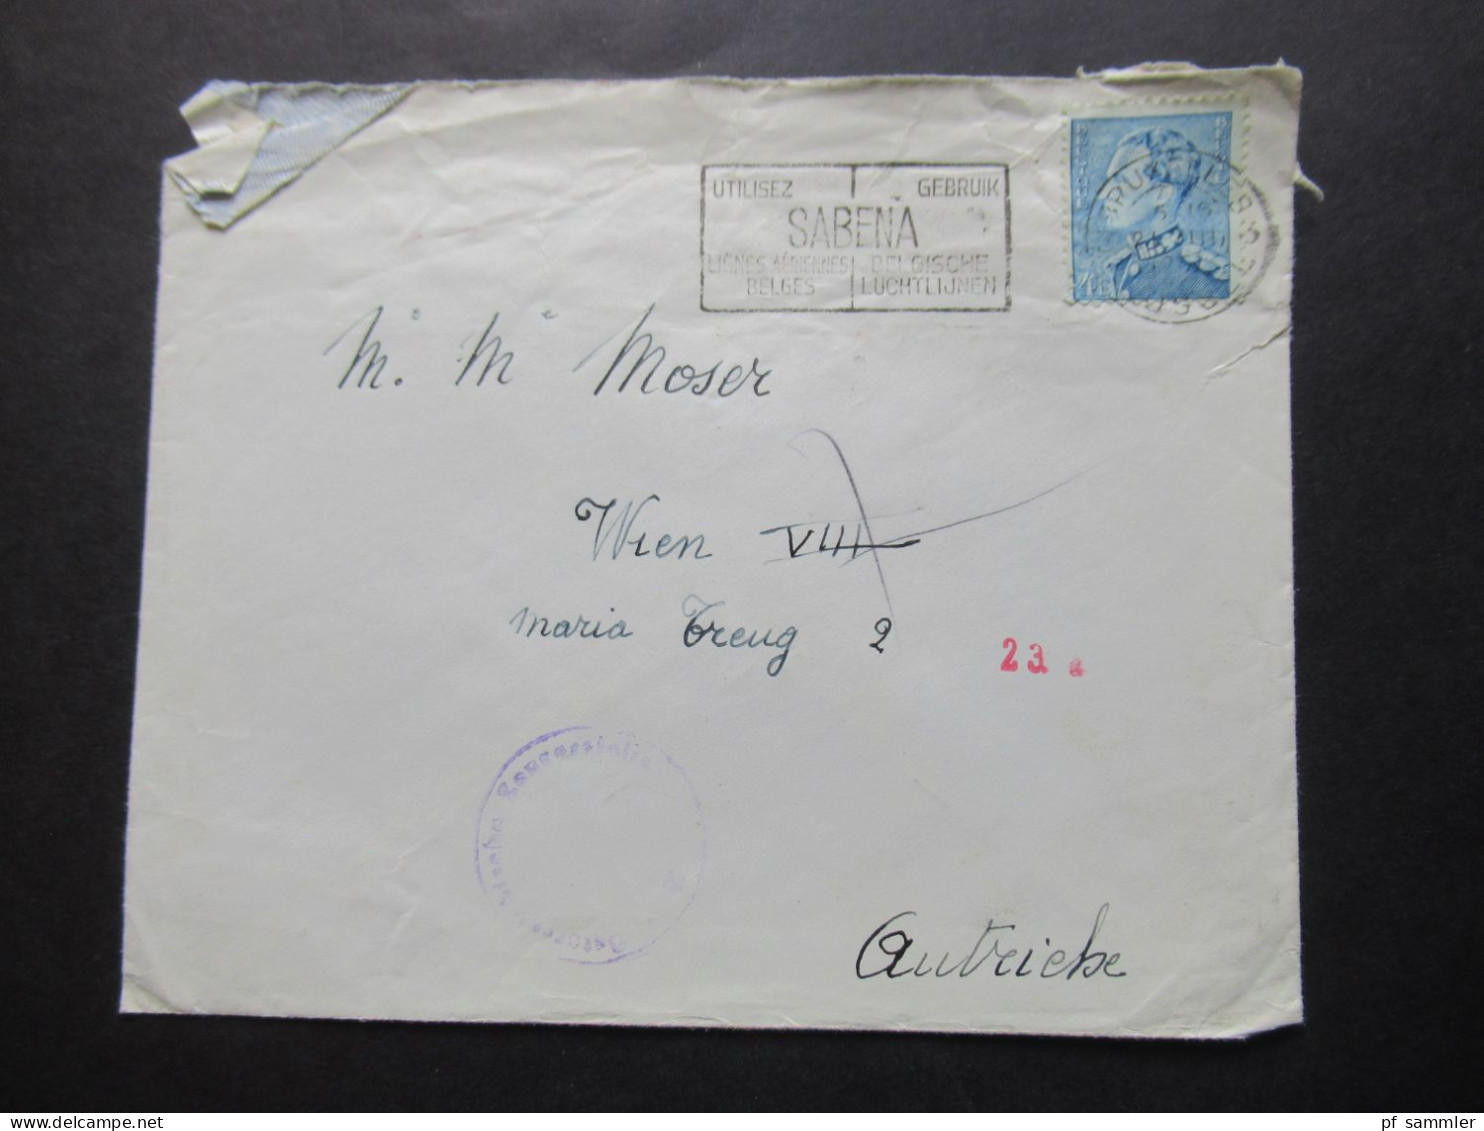 Belgien 1951 Auslandsbrief Nach Wien Zensurbeleg / Stempel Österrereichische Zensurstelle Und Roter Stempel 23 A - Covers & Documents